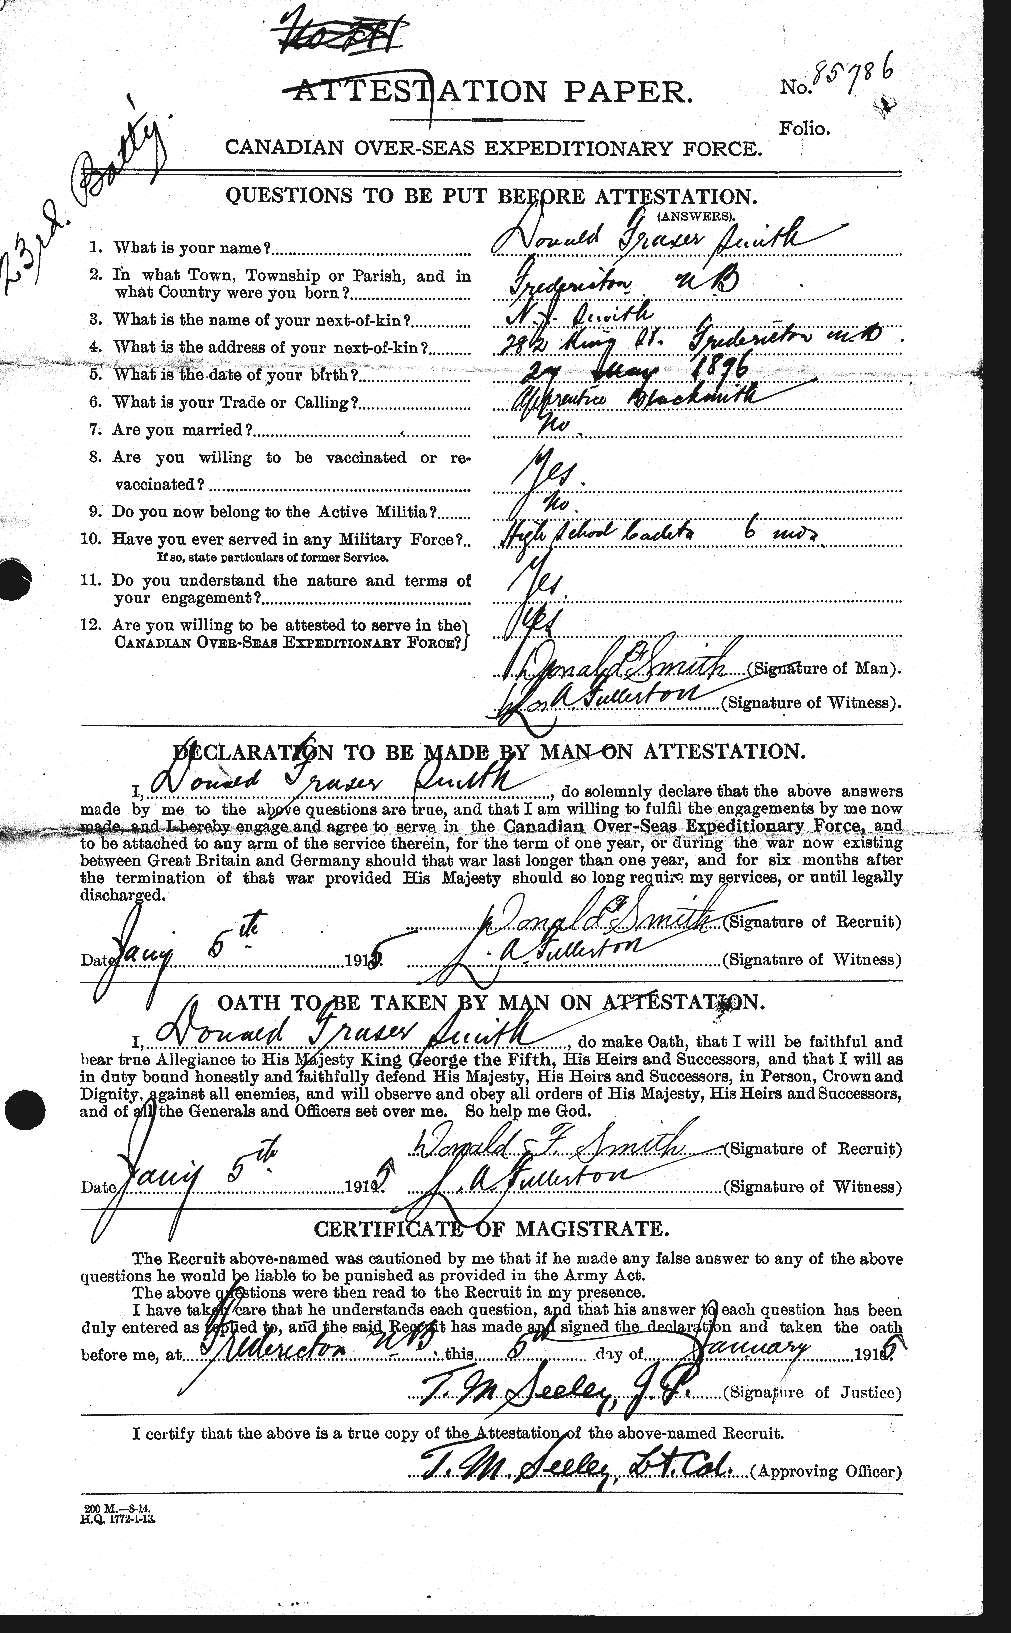 Dossiers du Personnel de la Première Guerre mondiale - CEC 101784a